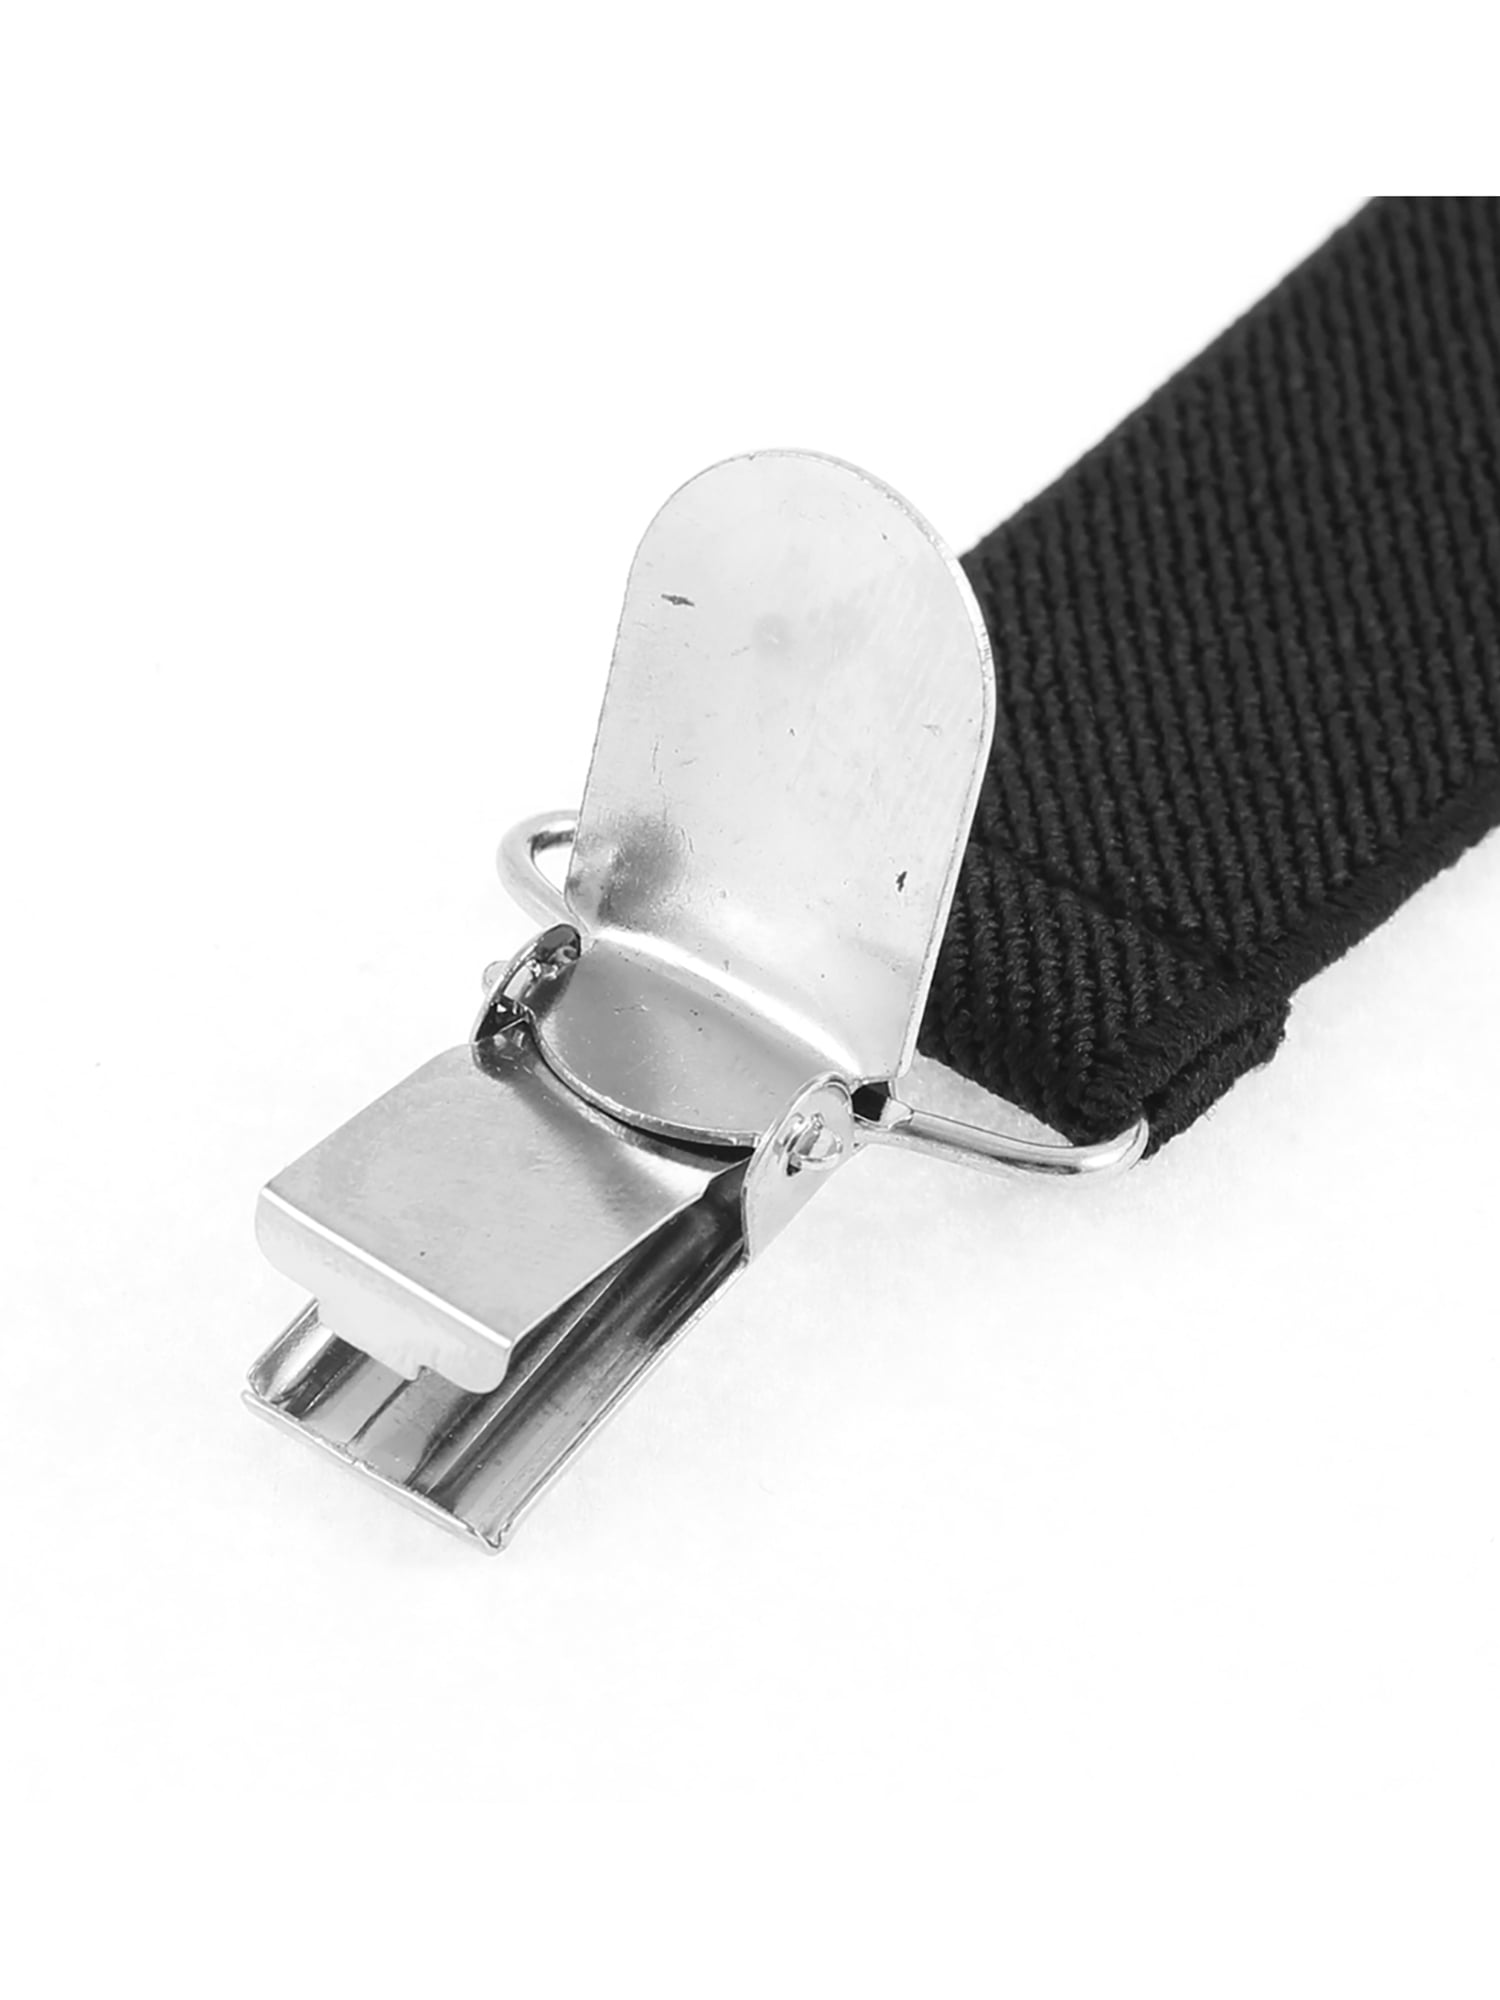 Adjustable Metal Clamp Elastic Suspenders Braces Black 2.5cm Width ...